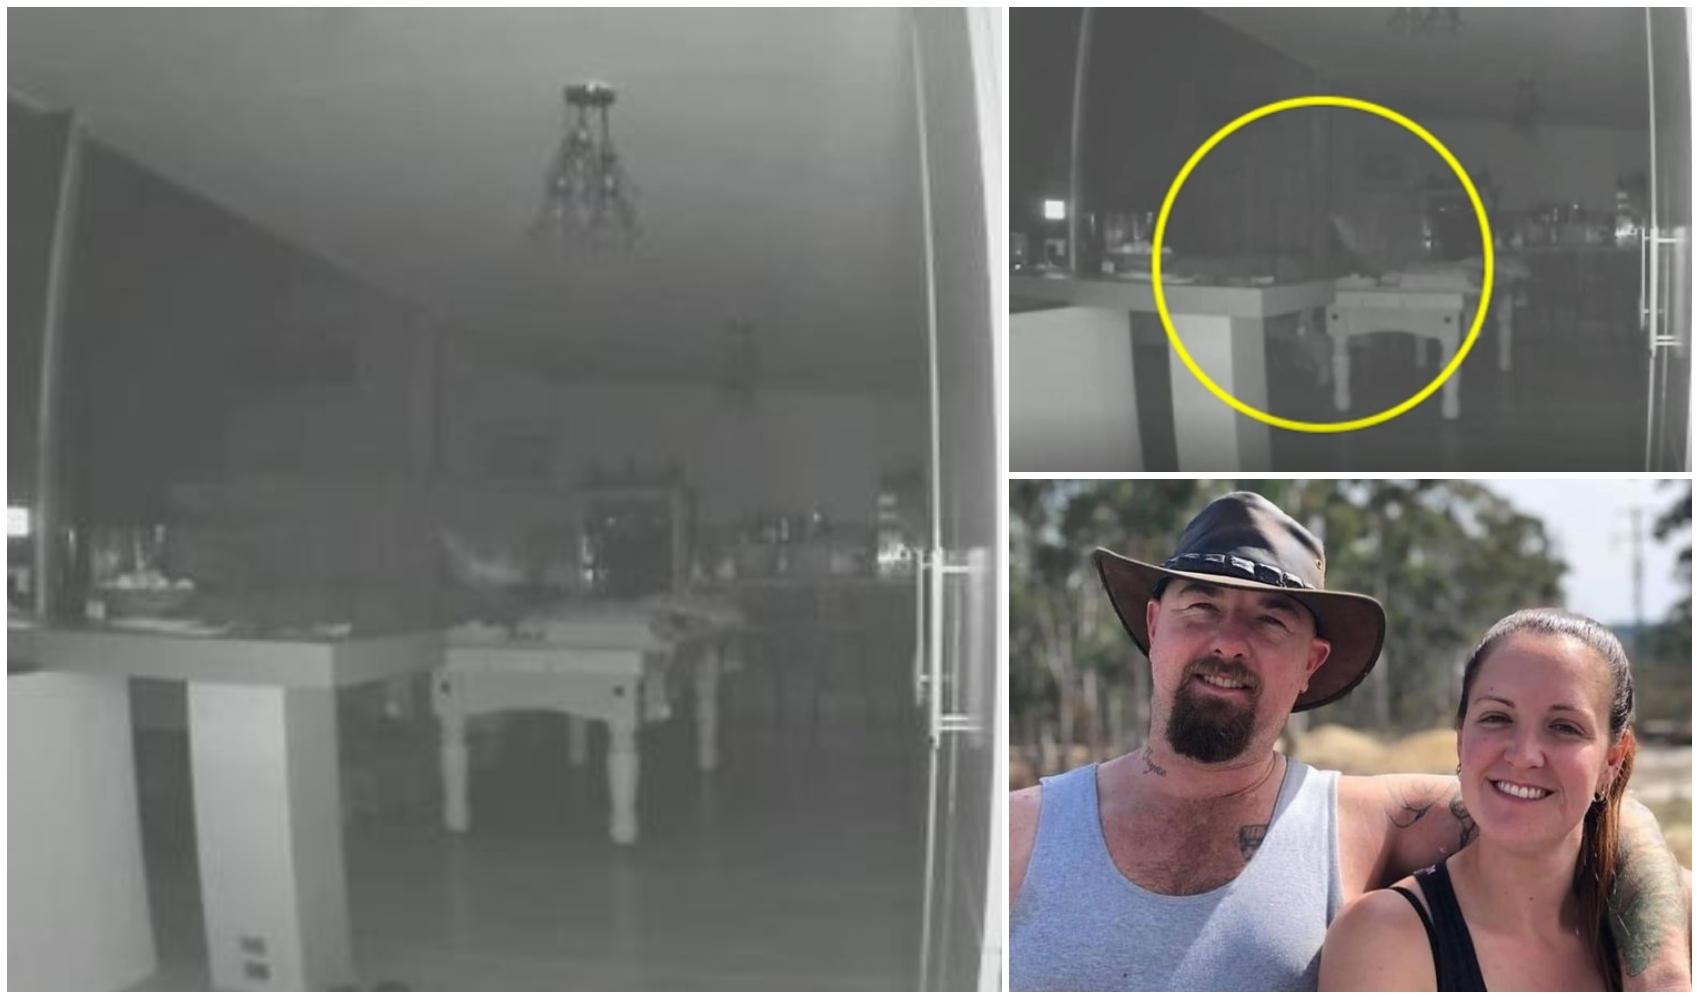 colaj foto cu imagini surprinse noaptea de camere de supraveghere si Matthew Kane si sotia lui, lauren